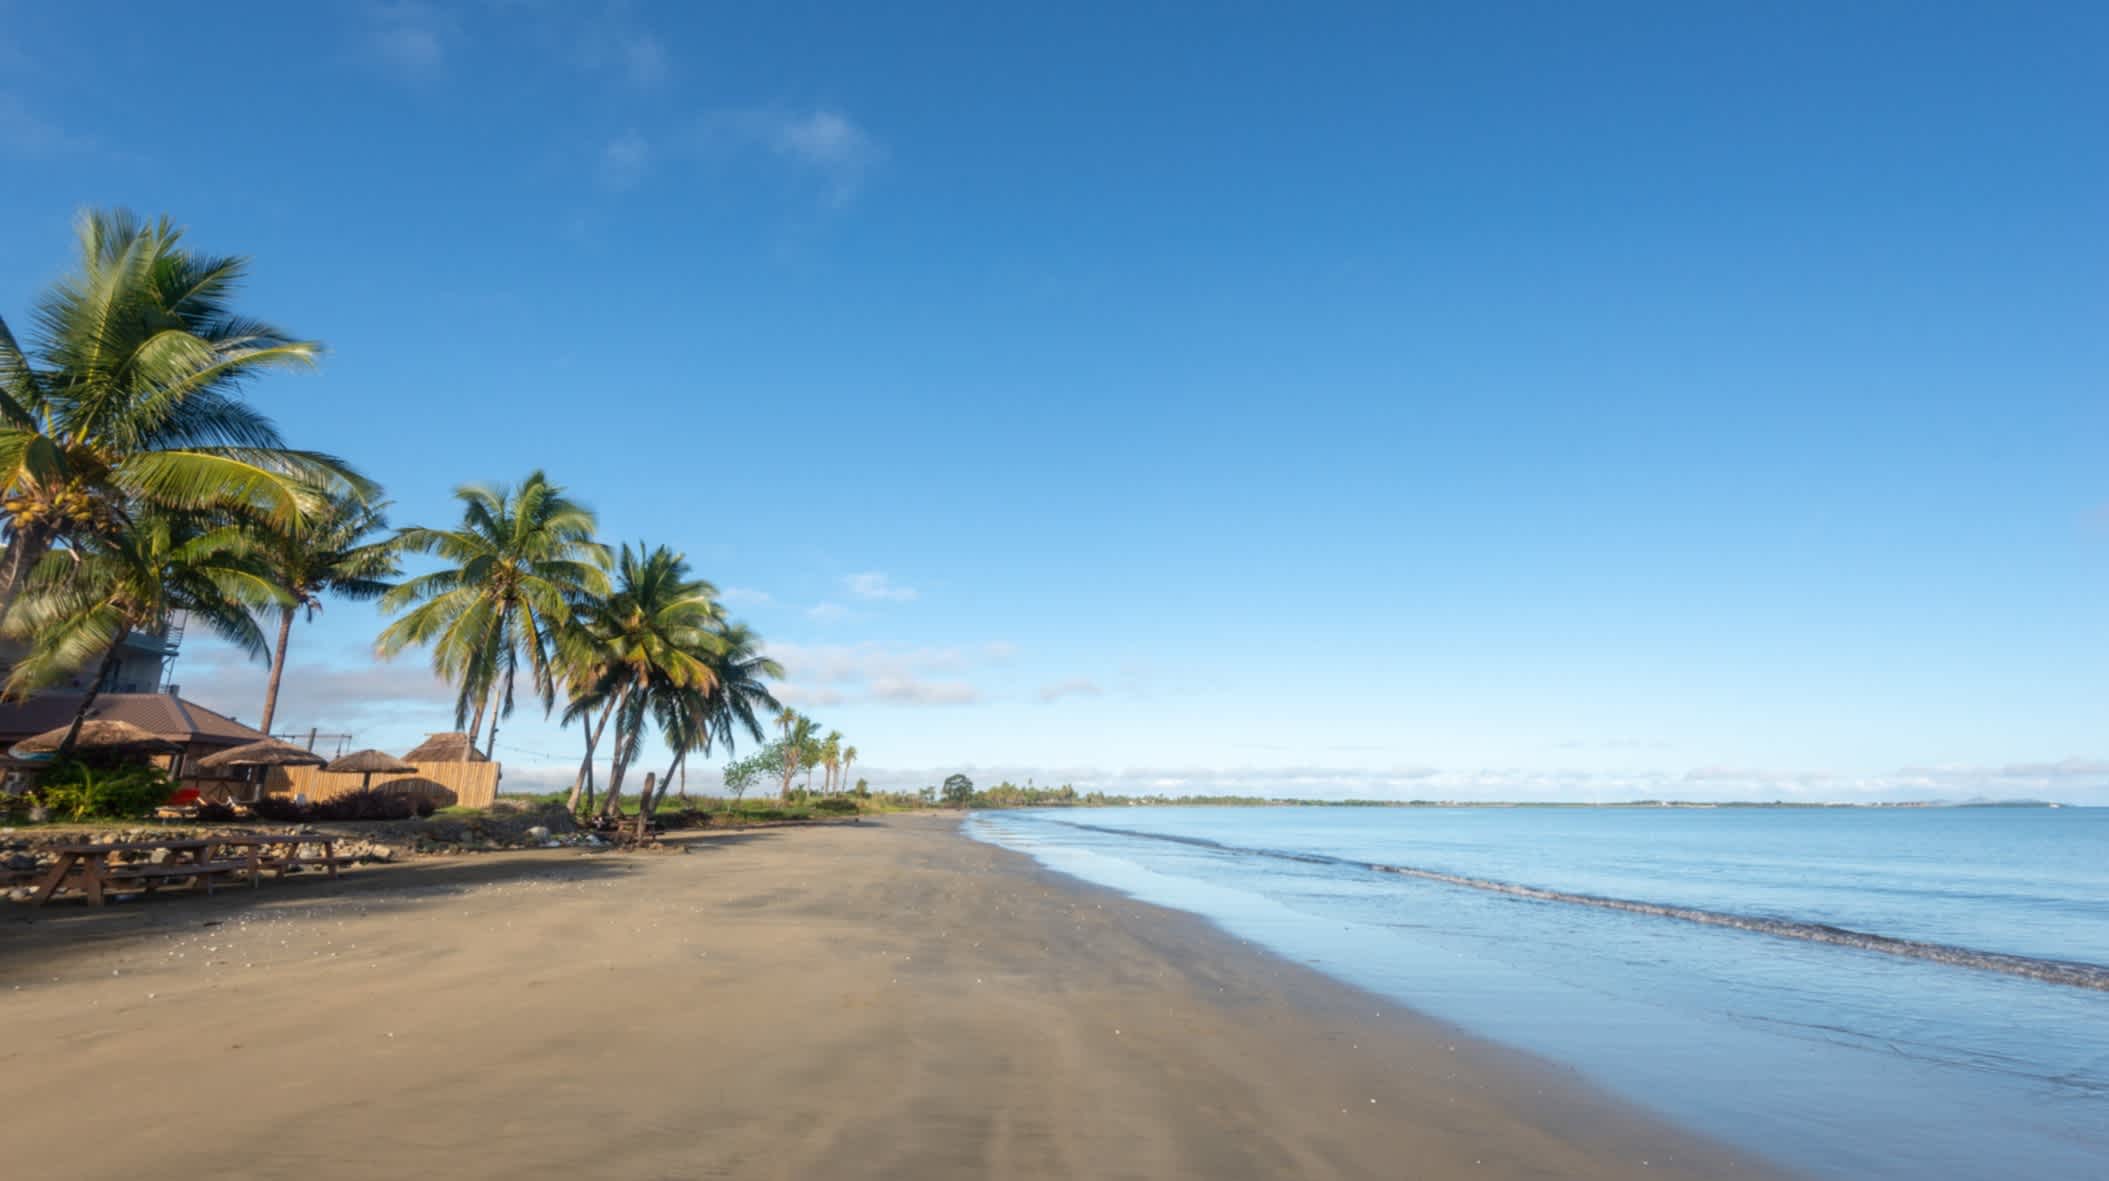 Blick auf den Strand von Wailoaloa in der Nähe von Nadi in Fidschi.

